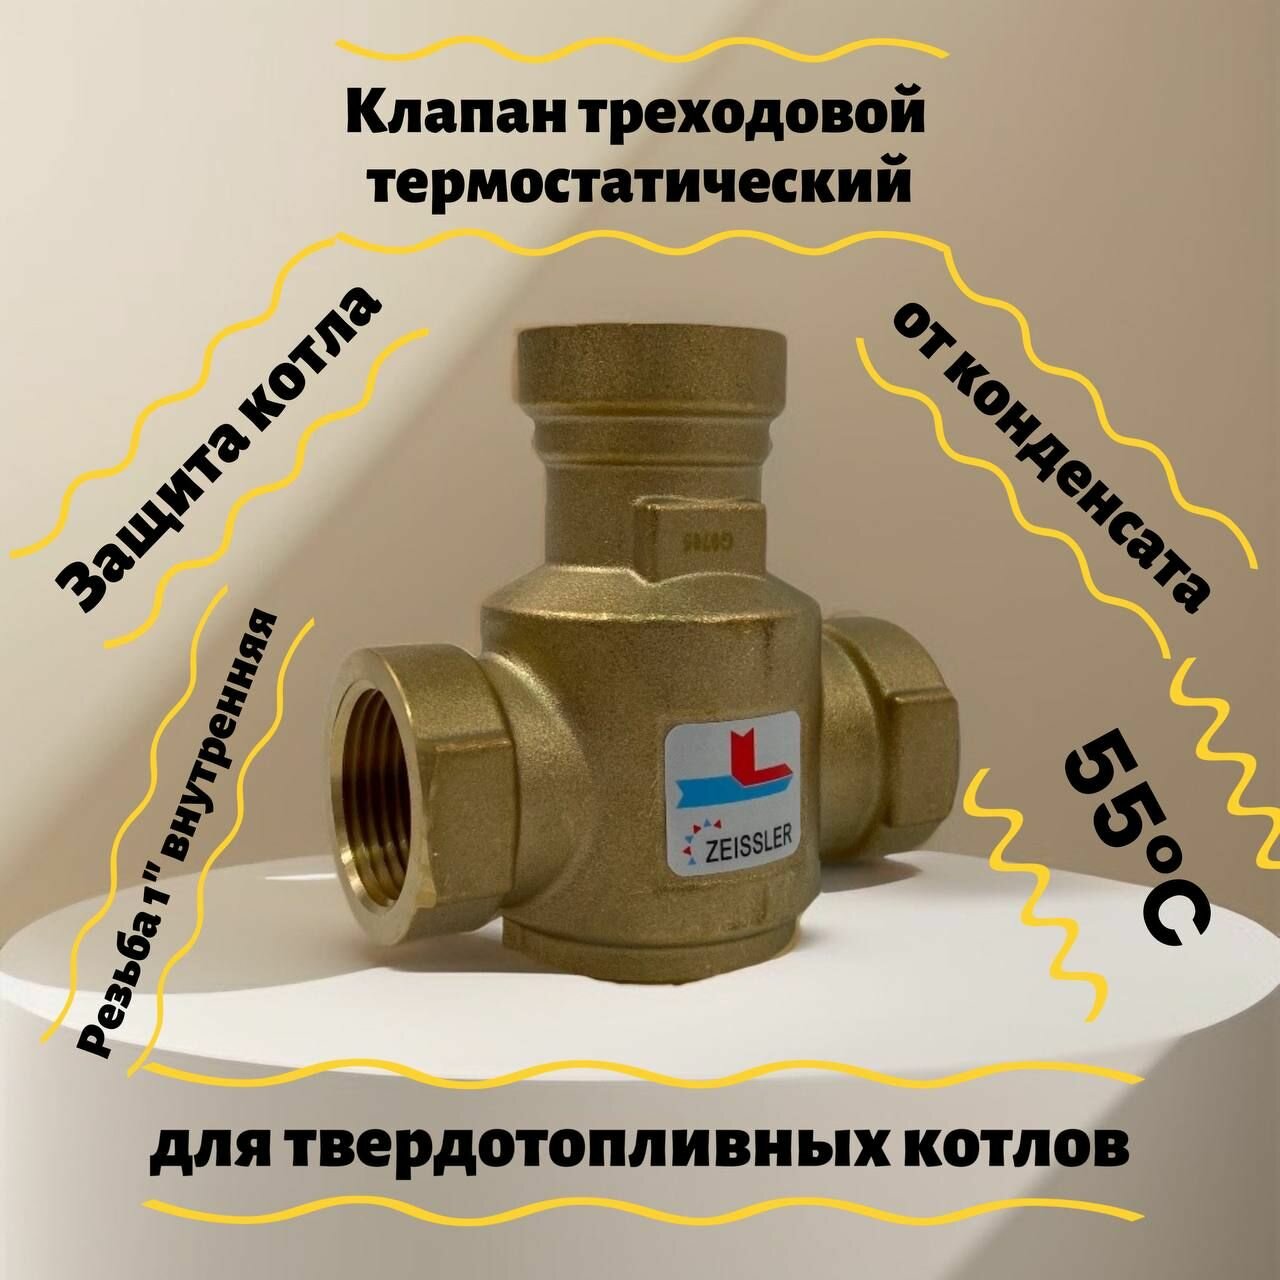 Термостатический смесительный клапан для напольных котлов Rp 1 ВР 55°С ZSm.411.015506